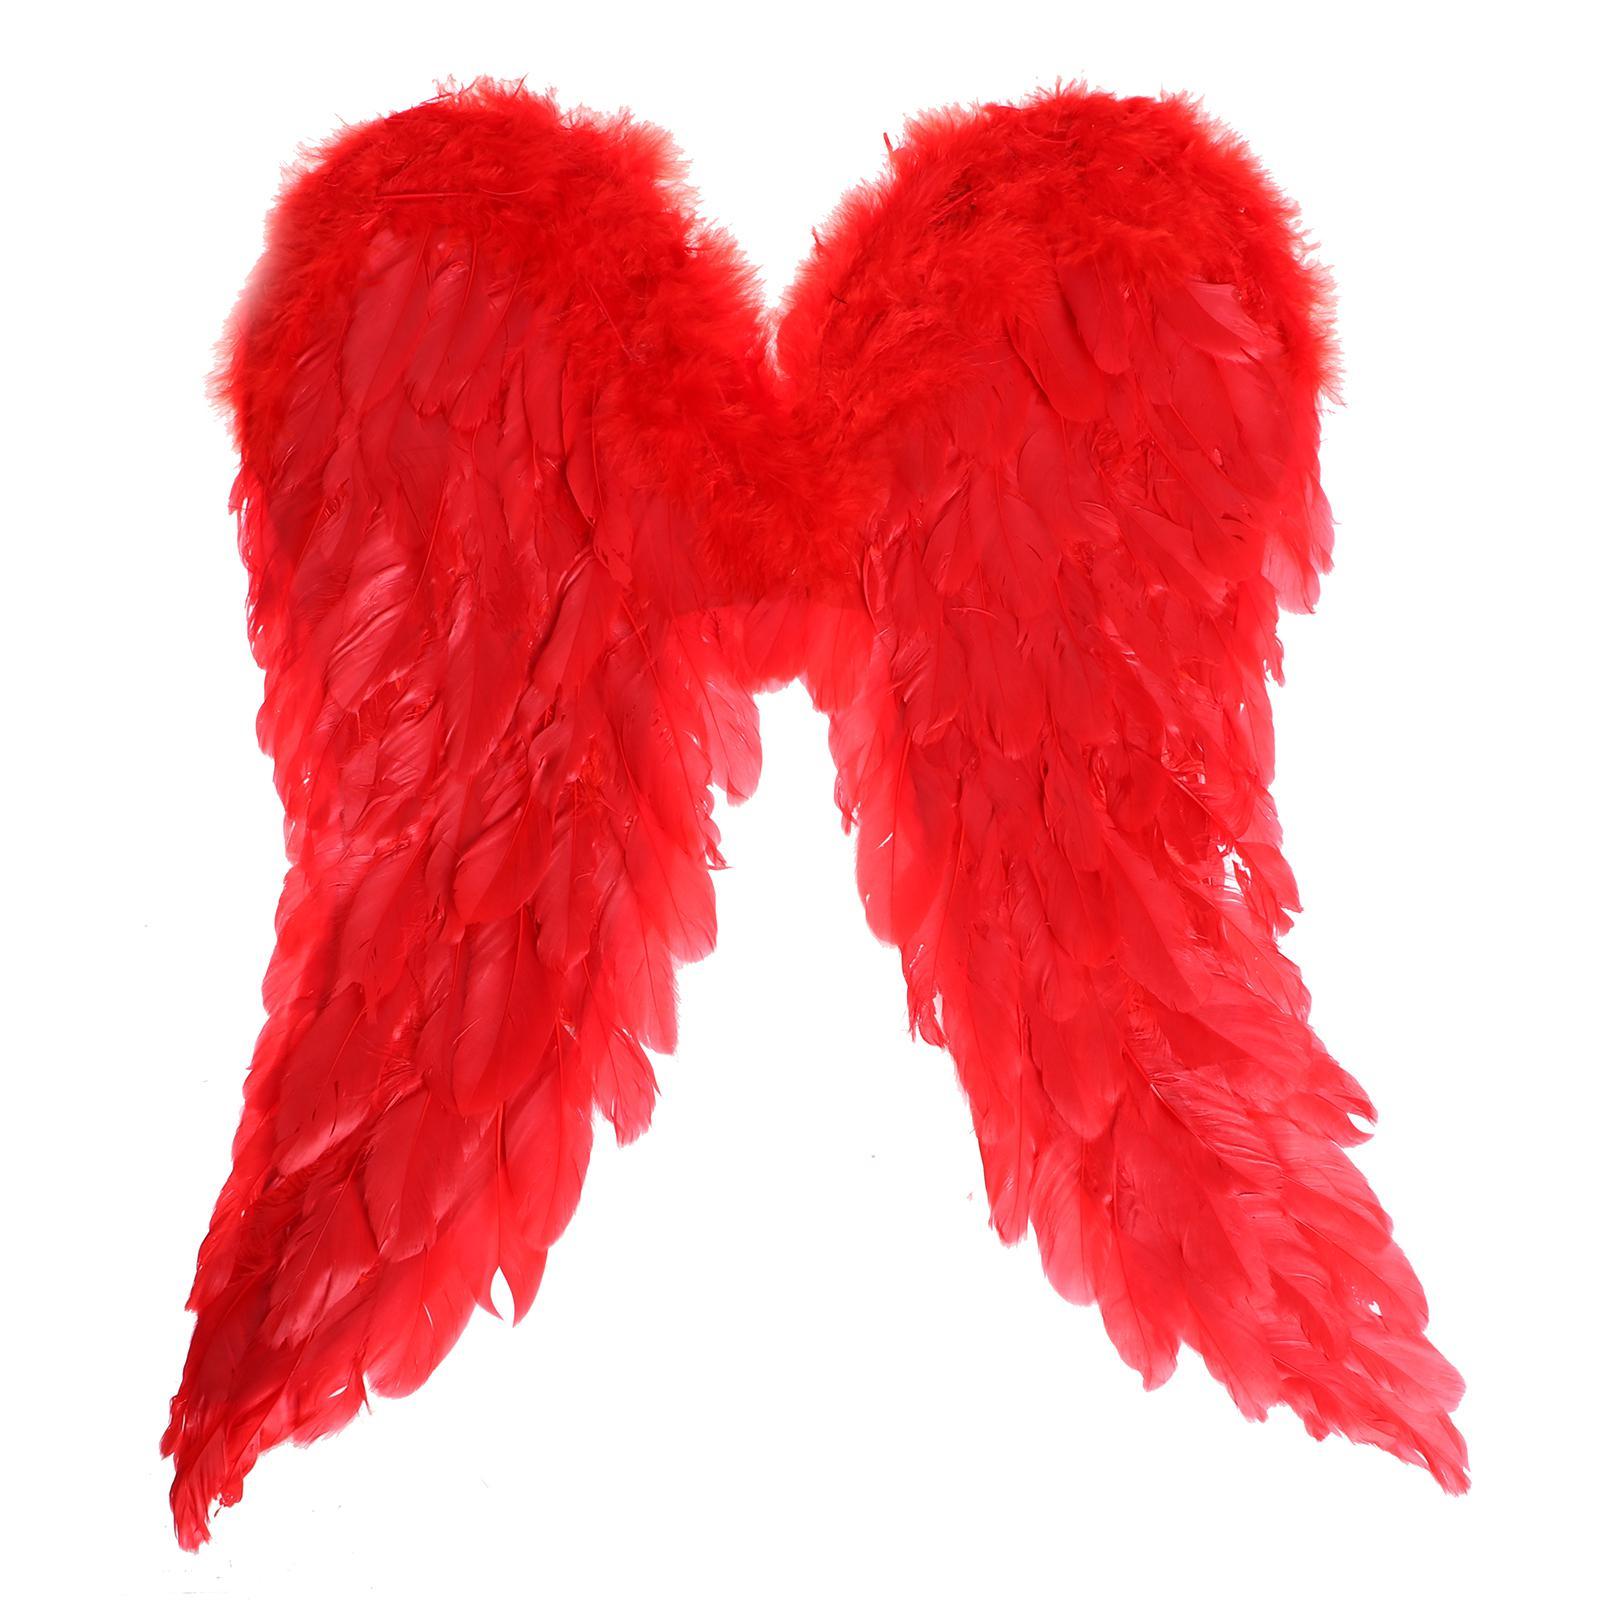 Крылья купить недорого. Крылья ангела красные 55х40. Крылышки ангела в Красном. Шарф из перьев. Карнавальные Крылья "ангел".